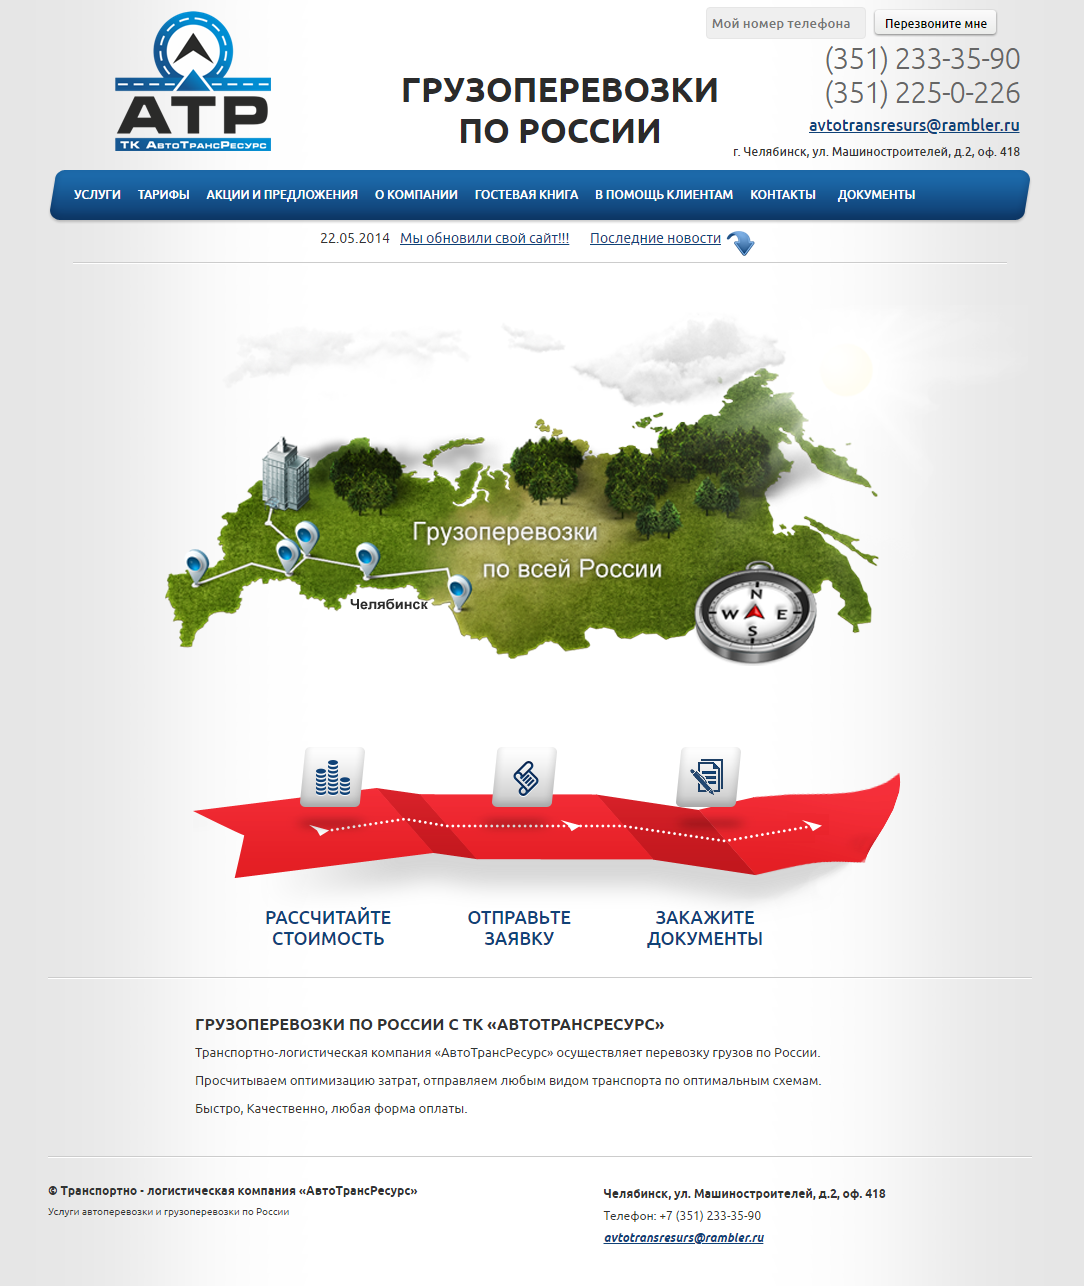 Сайт-визитка "Транспортная компания АвтоТрансРесурс"